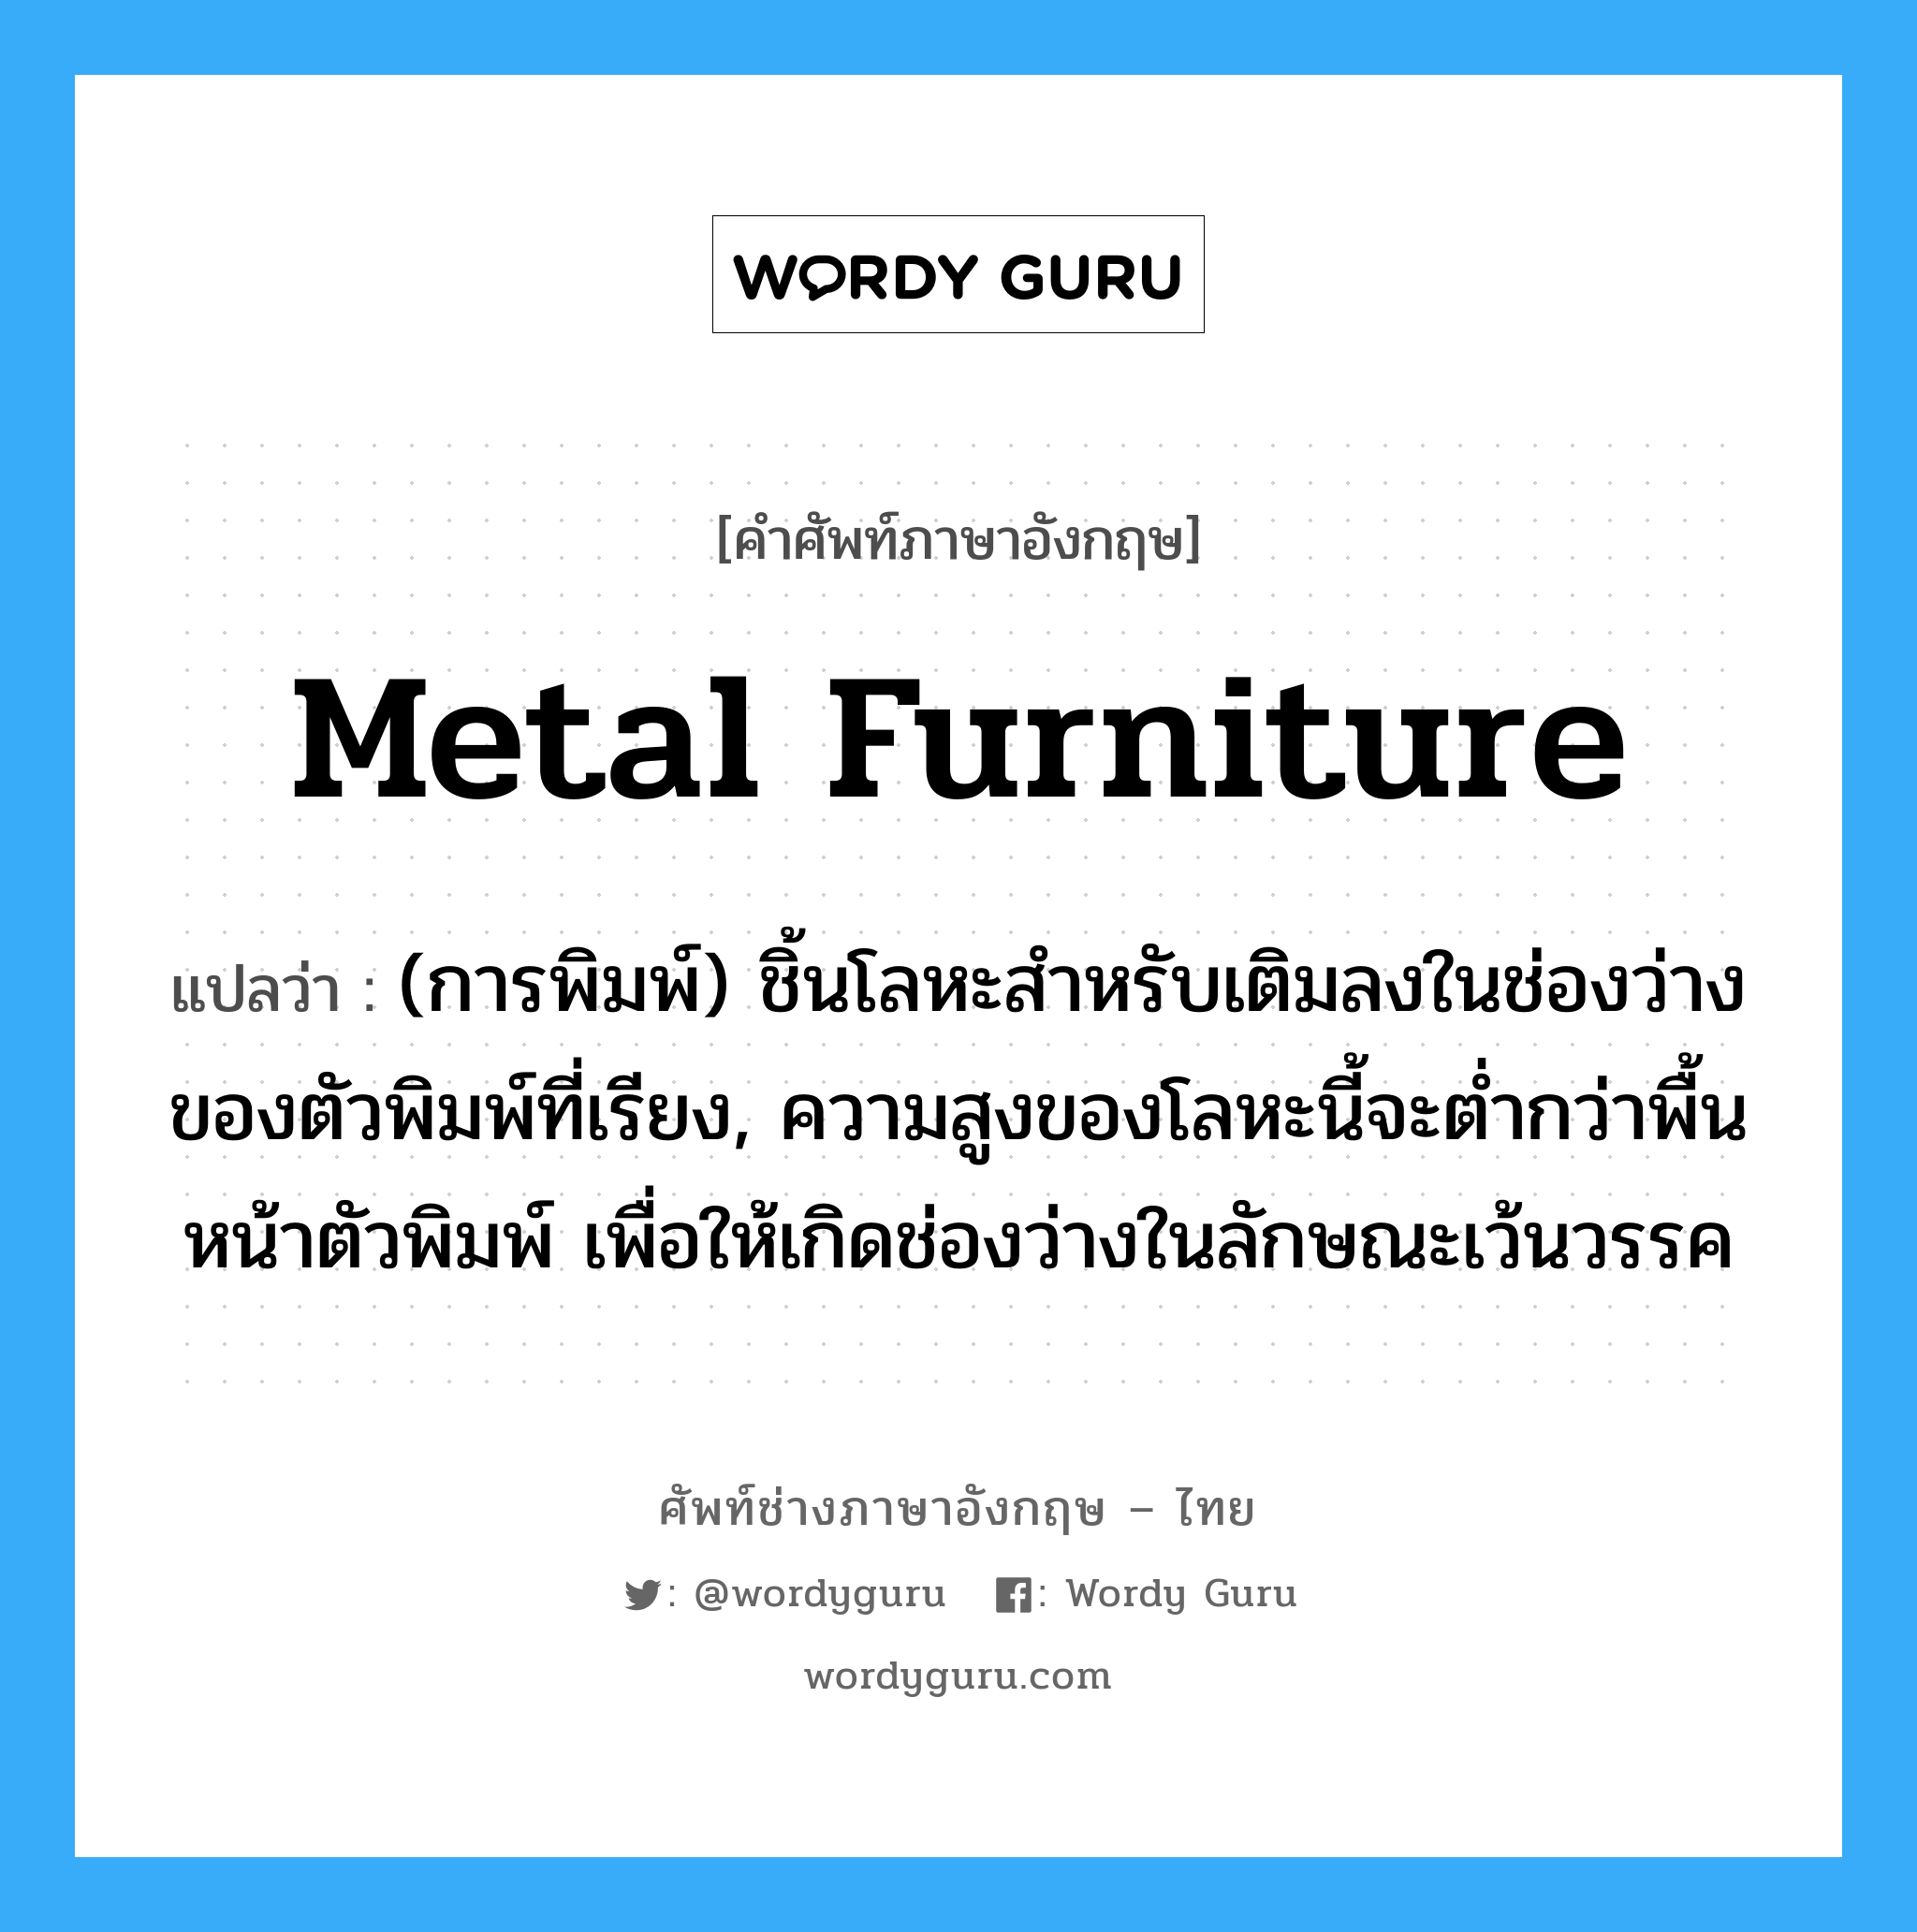 metal furniture แปลว่า?, คำศัพท์ช่างภาษาอังกฤษ - ไทย metal furniture คำศัพท์ภาษาอังกฤษ metal furniture แปลว่า (การพิมพ์) ชิ้นโลหะสำหรับเติมลงในช่องว่างของตัวพิมพ์ที่เรียง, ความสูงของโลหะนี้จะต่ำกว่าพื้นหน้าตัวพิมพ์ เพื่อให้เกิดช่องว่างในลักษณะเว้นวรรค